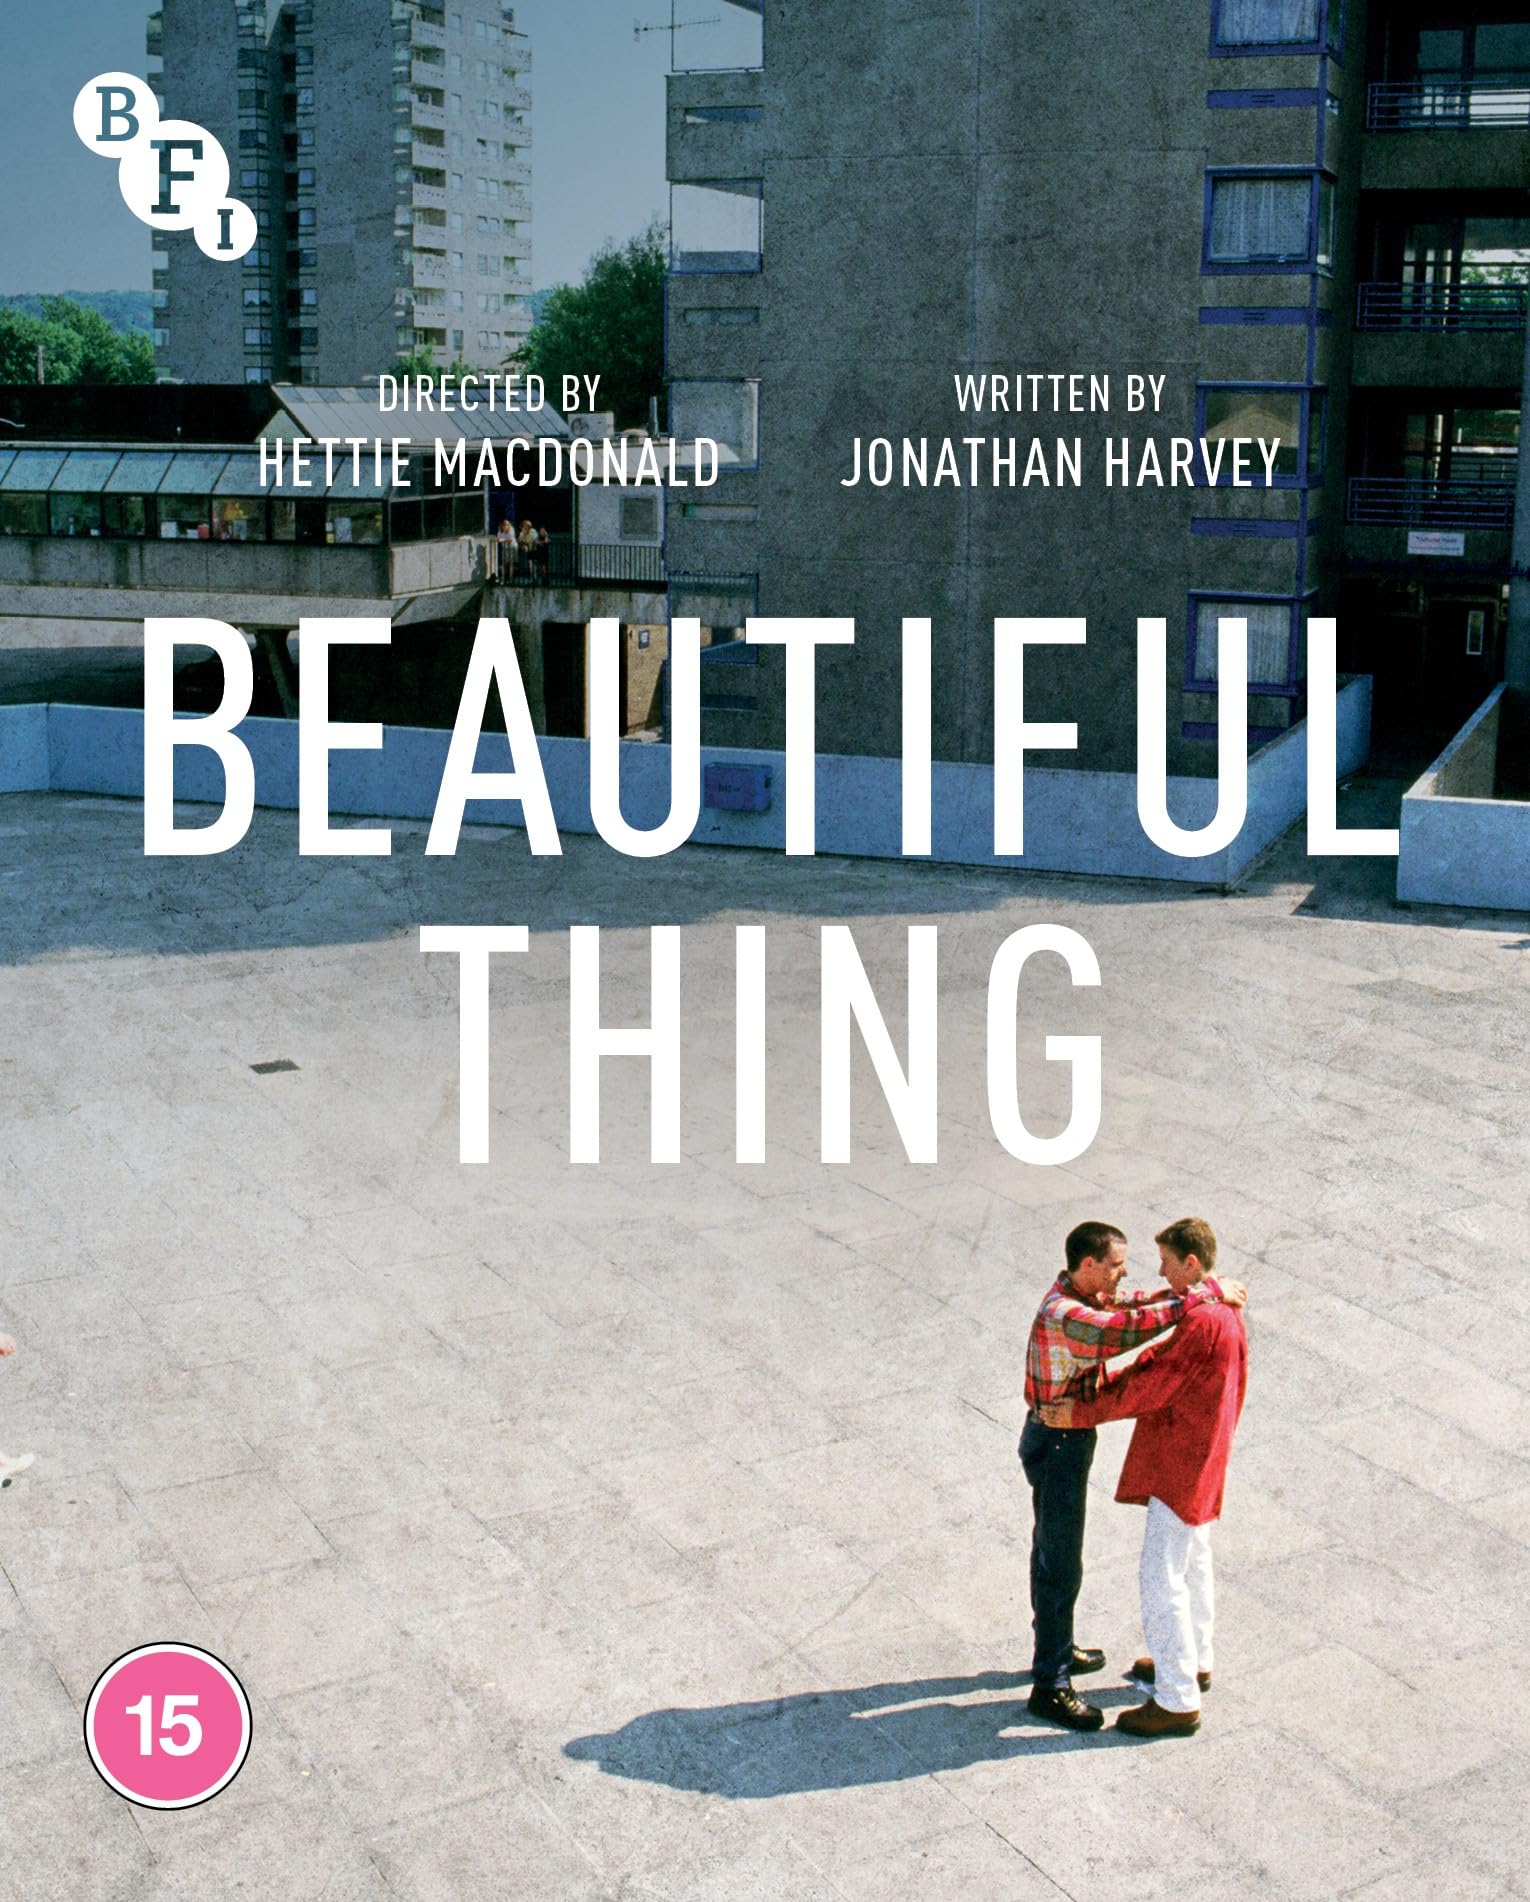 Beautiful Thing (Blu-ray)